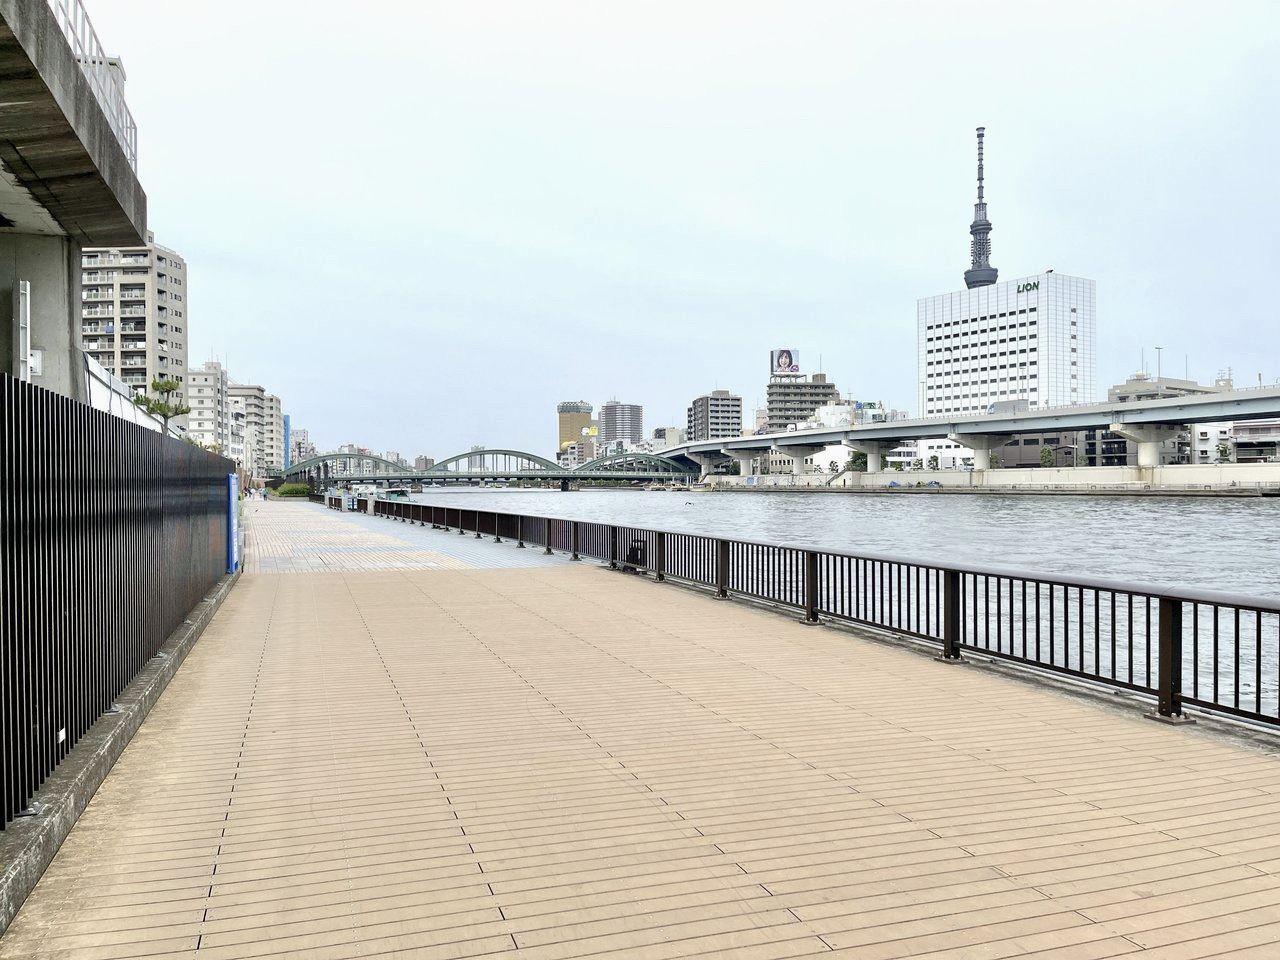 マンション目の前には隅田川が流れています。ペットとお散歩をしたら気持ちいいだろうなあ。